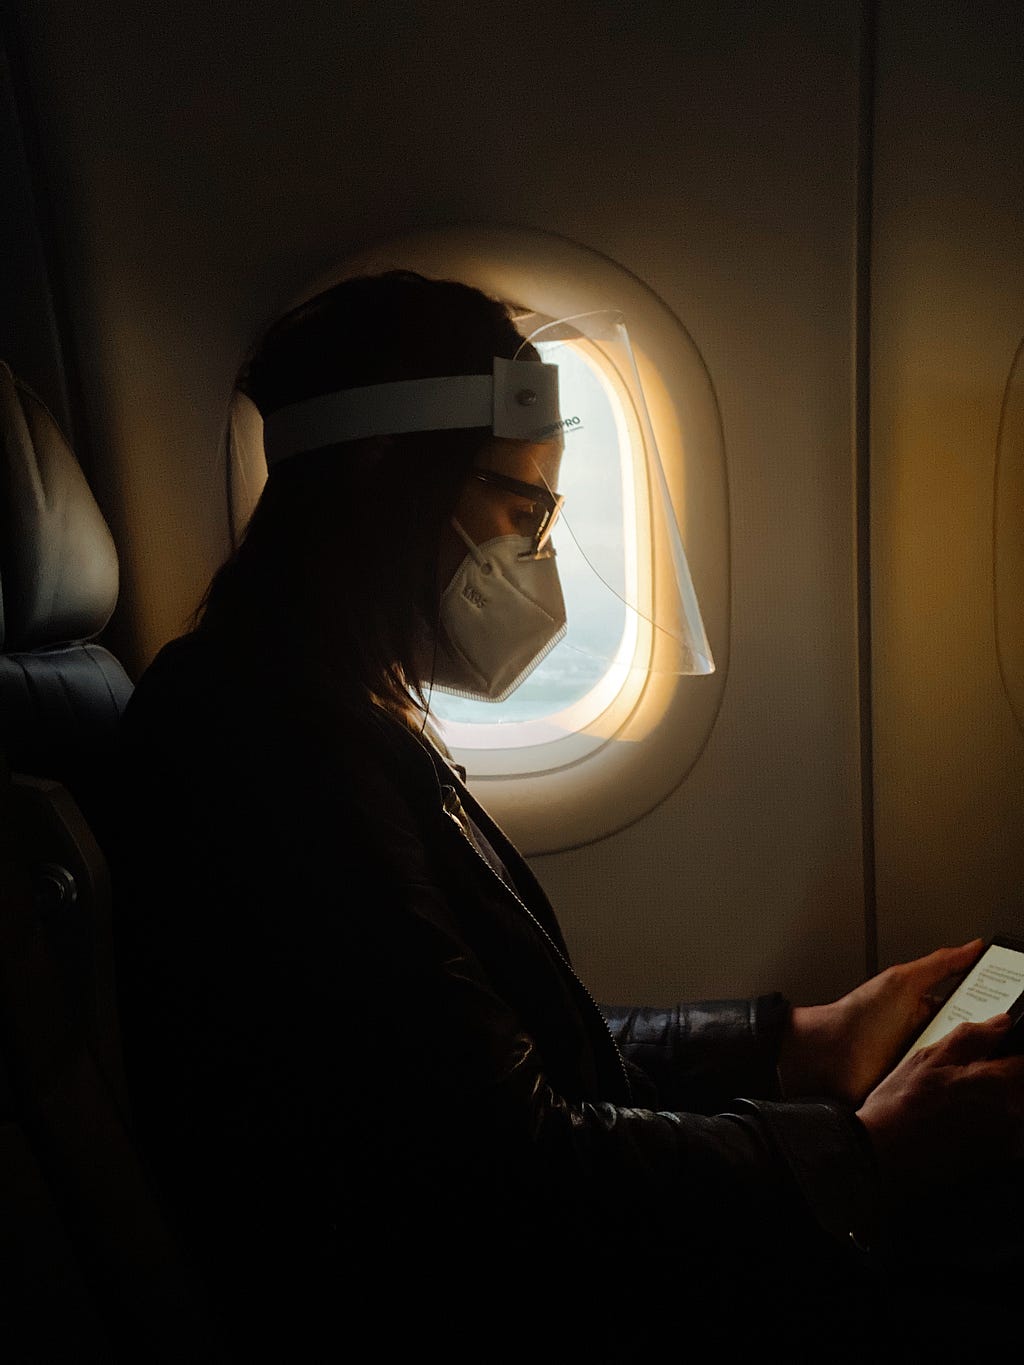 Passageira usando máscara e faceshield como forma de prevenção à COVID-19 em voo.